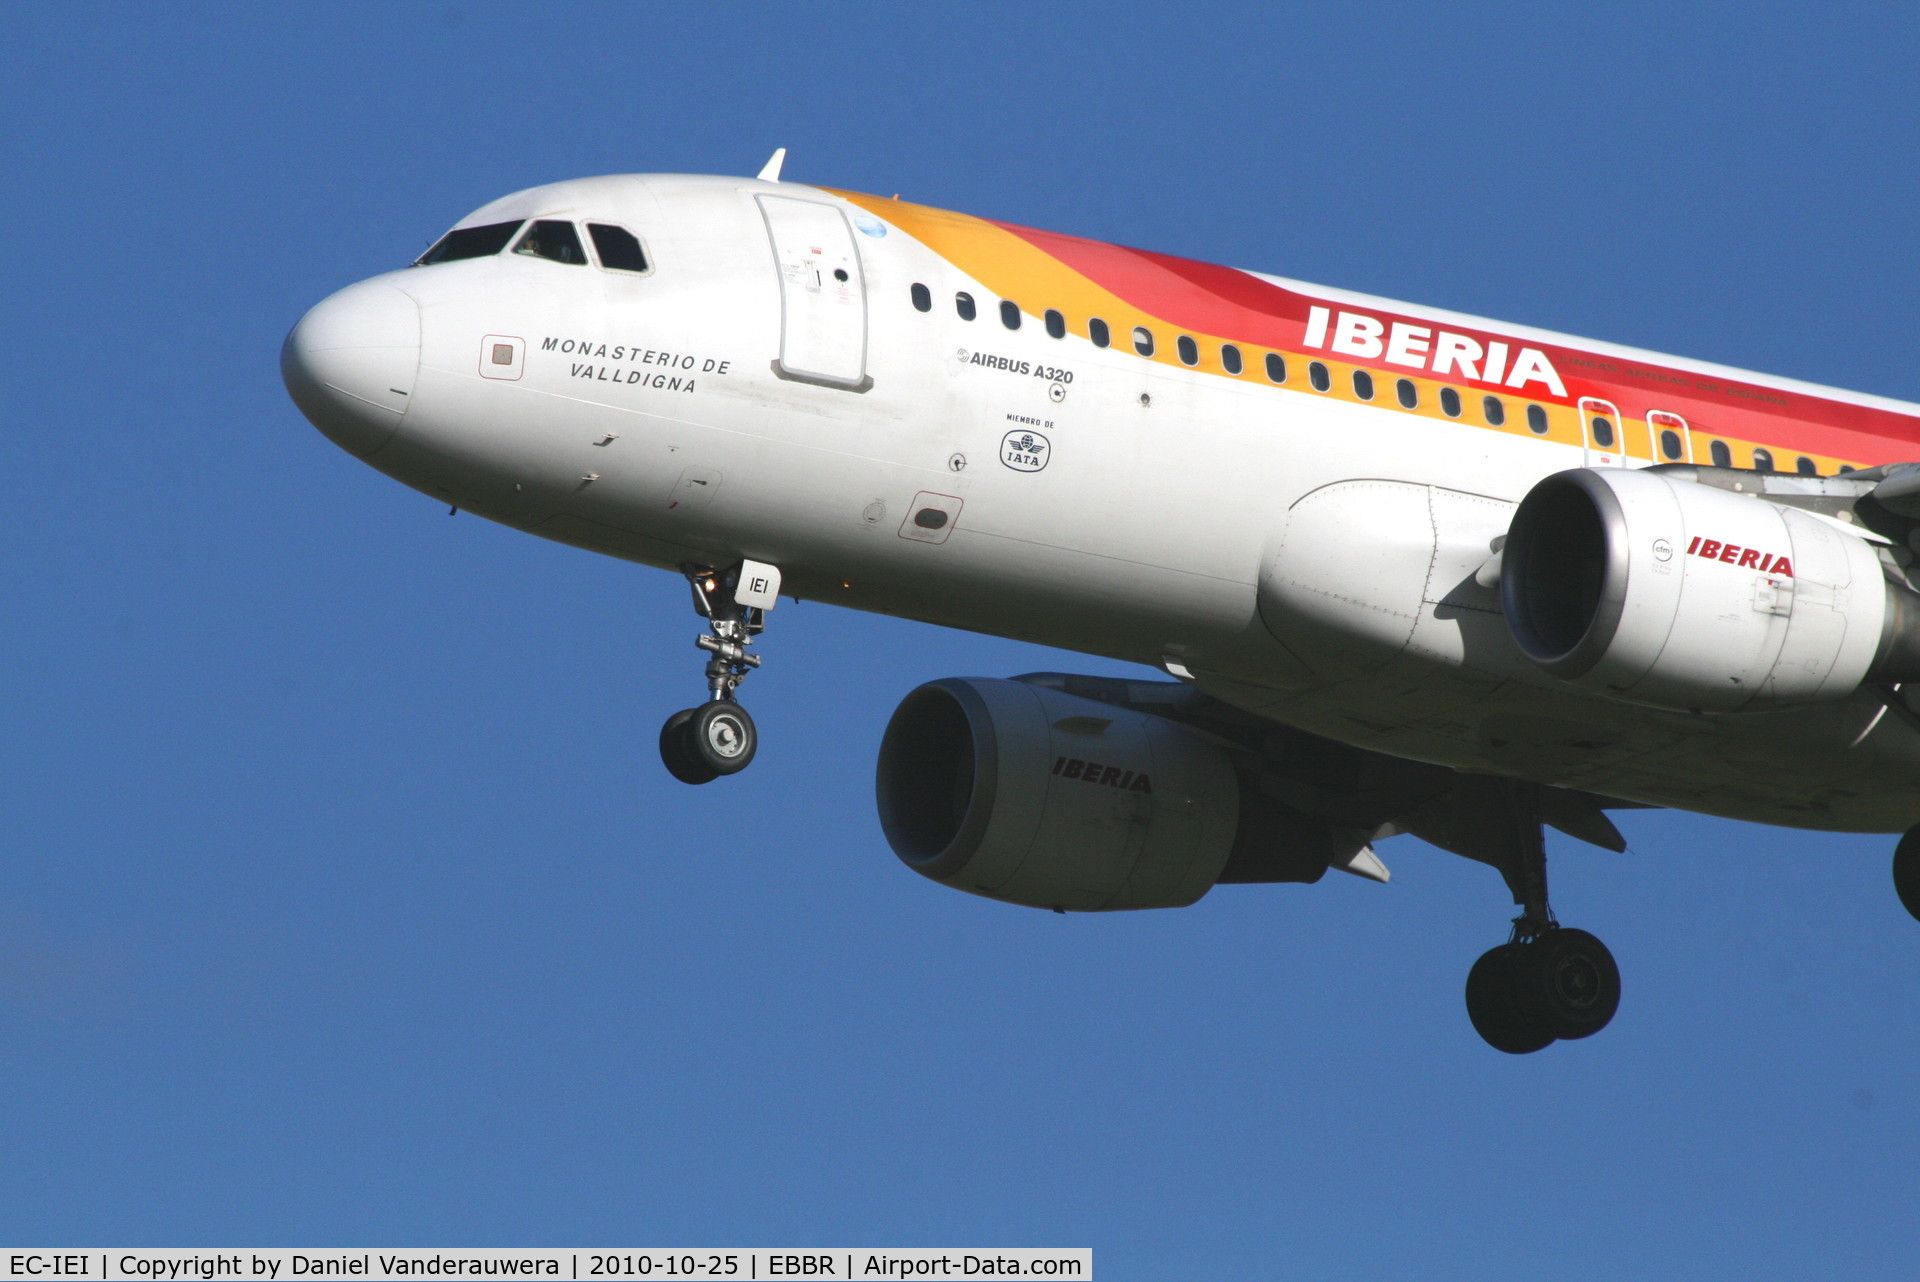 EC-IEI, 2001 Airbus A320-214 C/N 1694, Flight IB3206 is arriving to RWY 25L